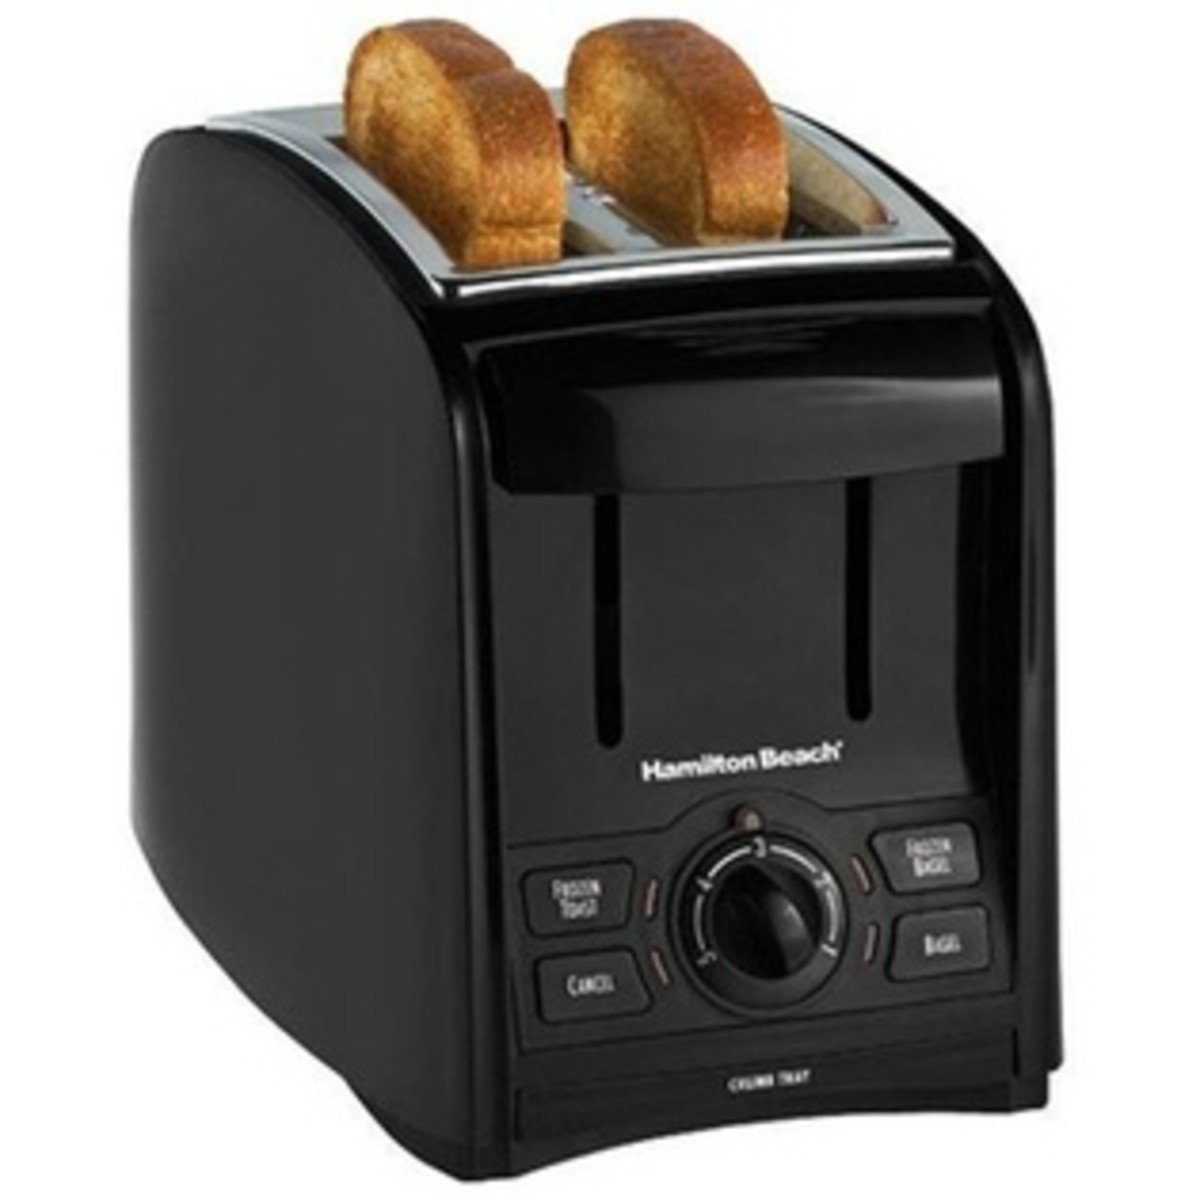 Hamilton Beach Smart Toast 2-Slice toaster, Model # 22121